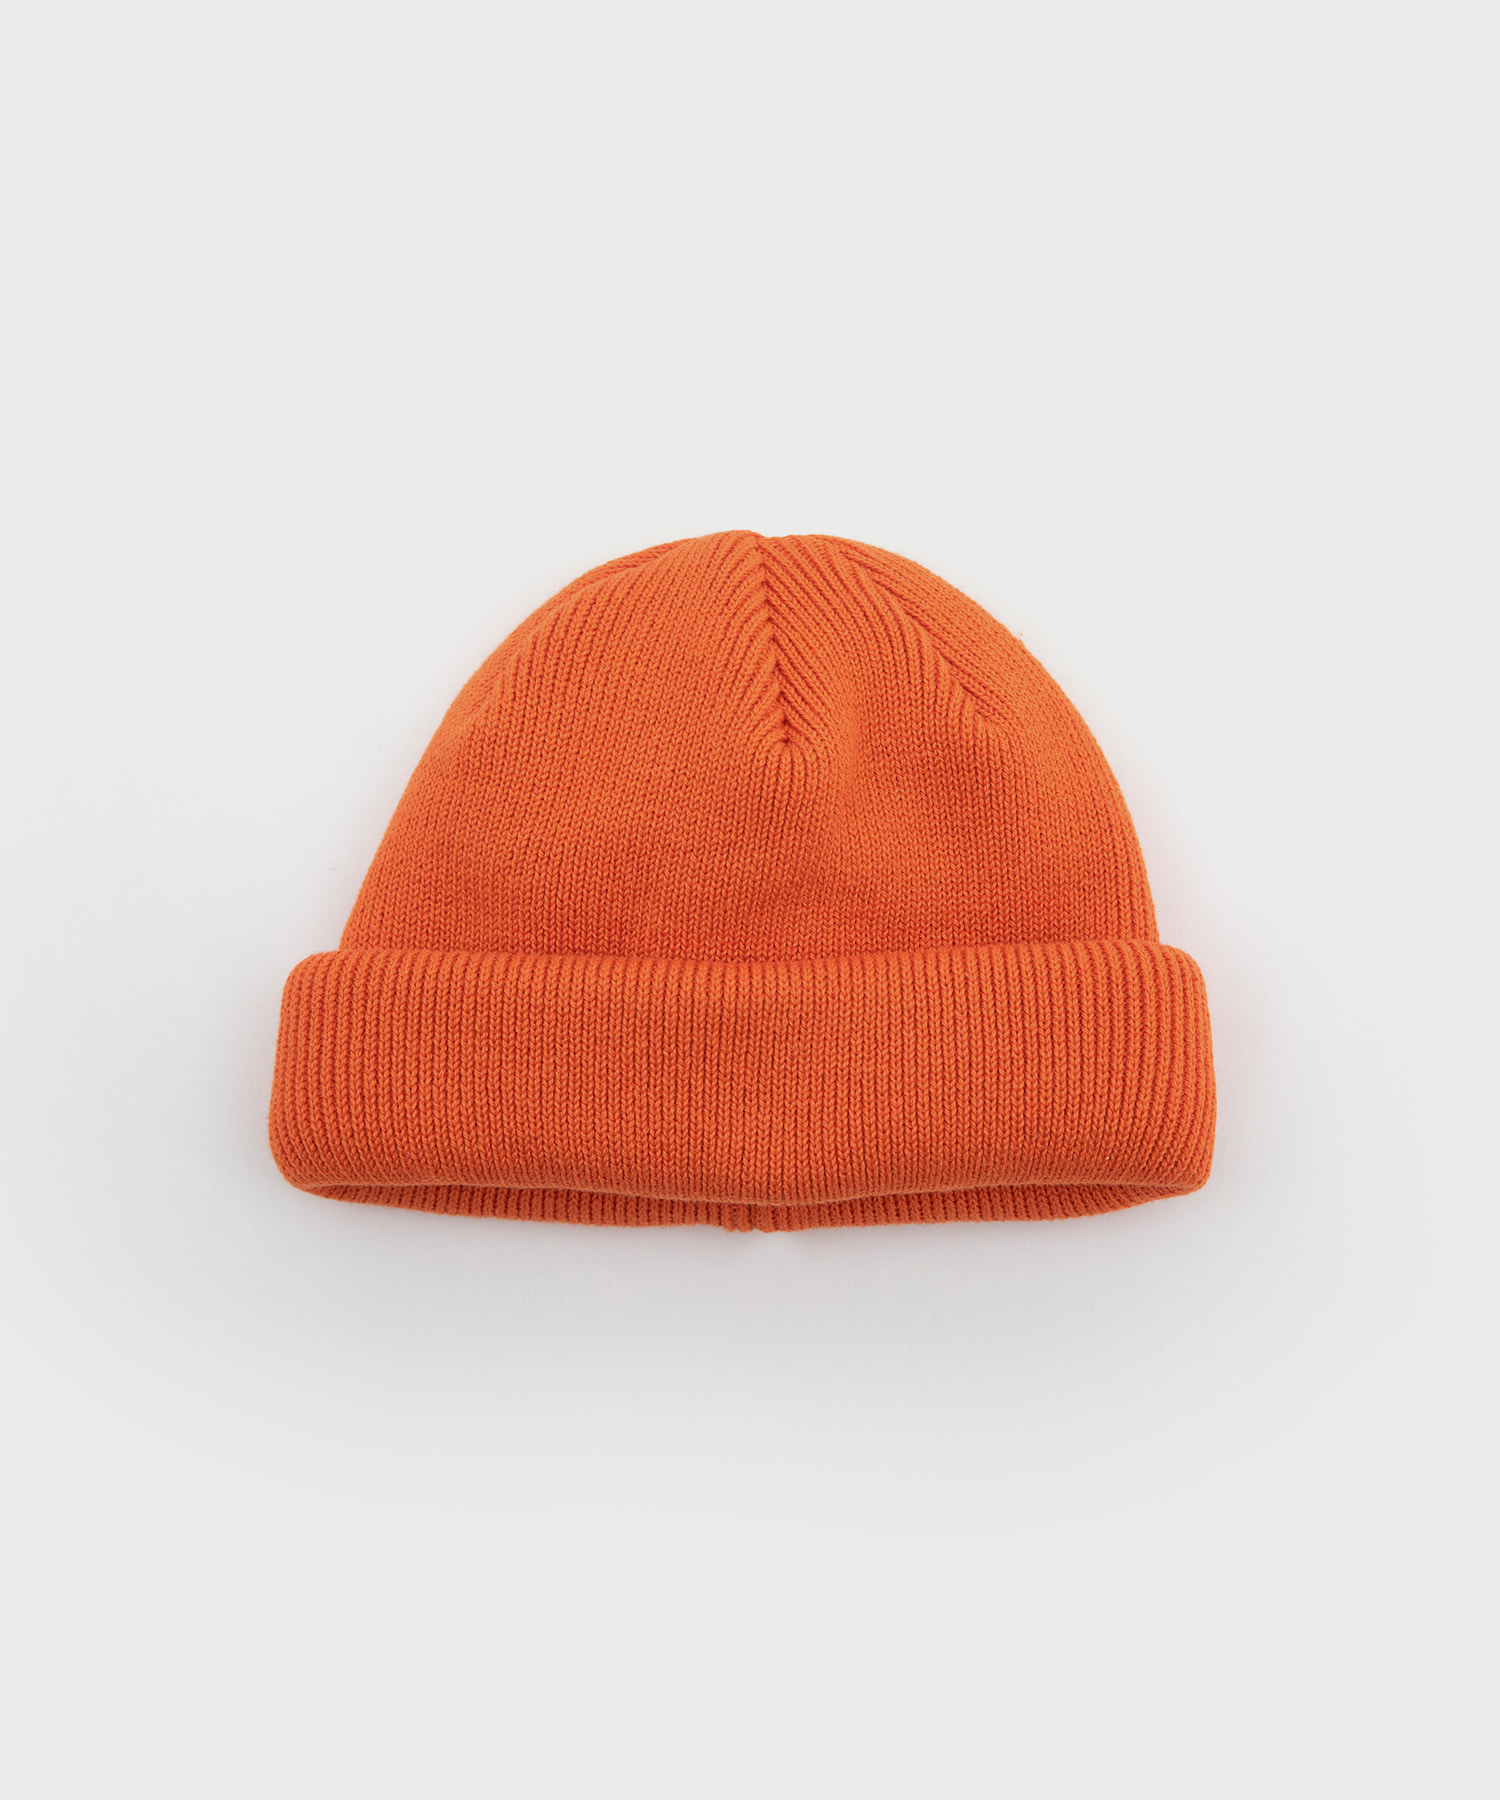 Roll Knit Cap (Orange)